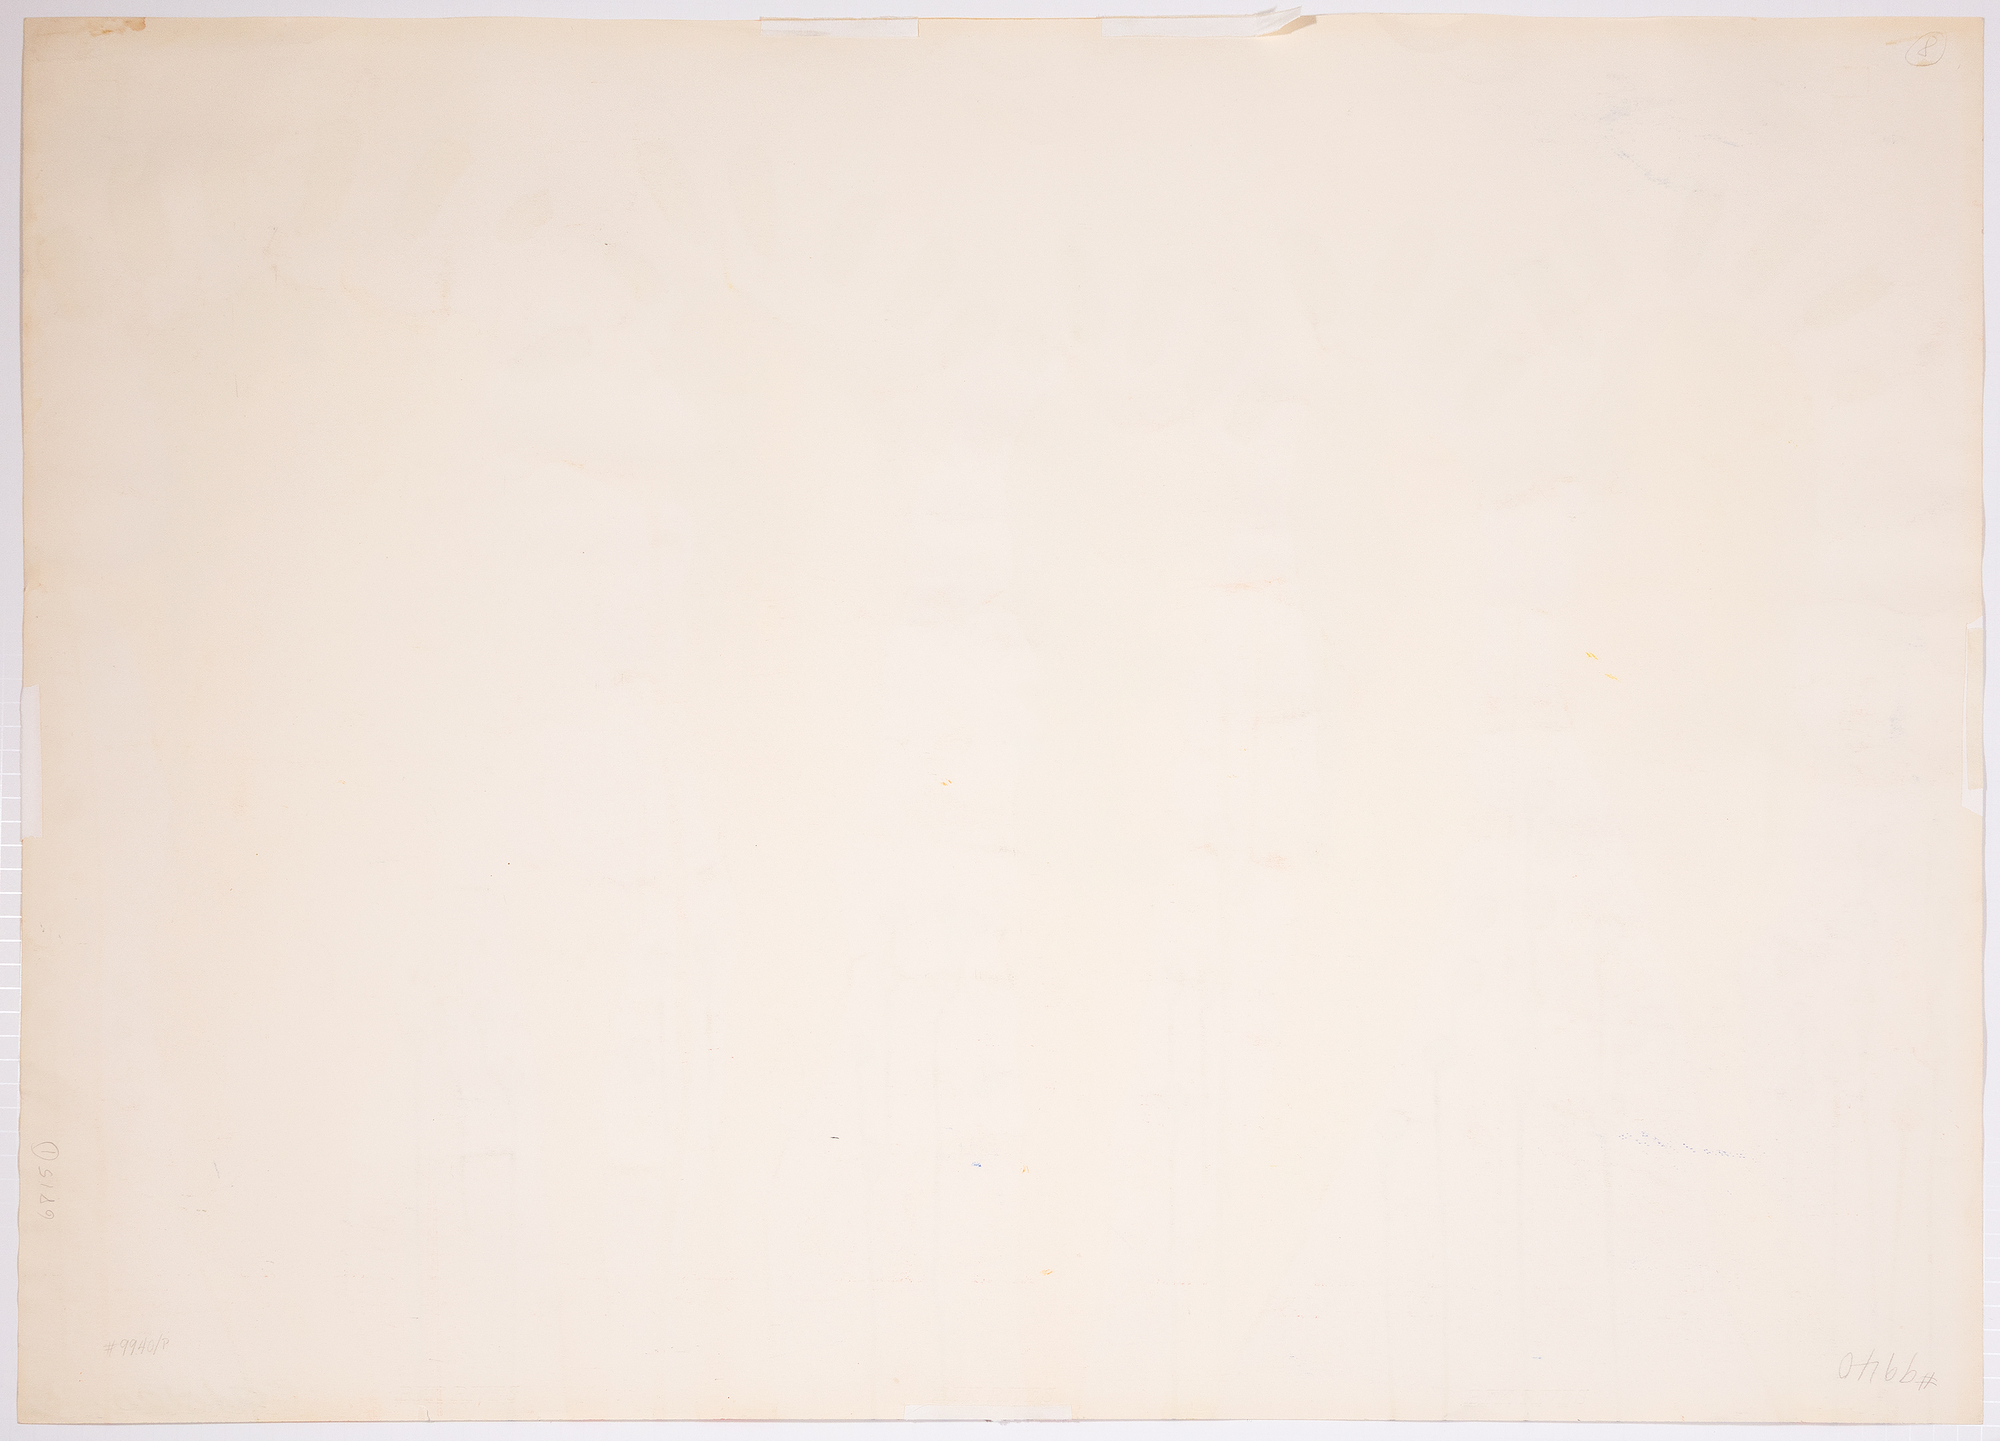 ALEXANDER CALDER - Huellas - gouache y tinta sobre papel - 29 3/8 x 41 1/8 in.